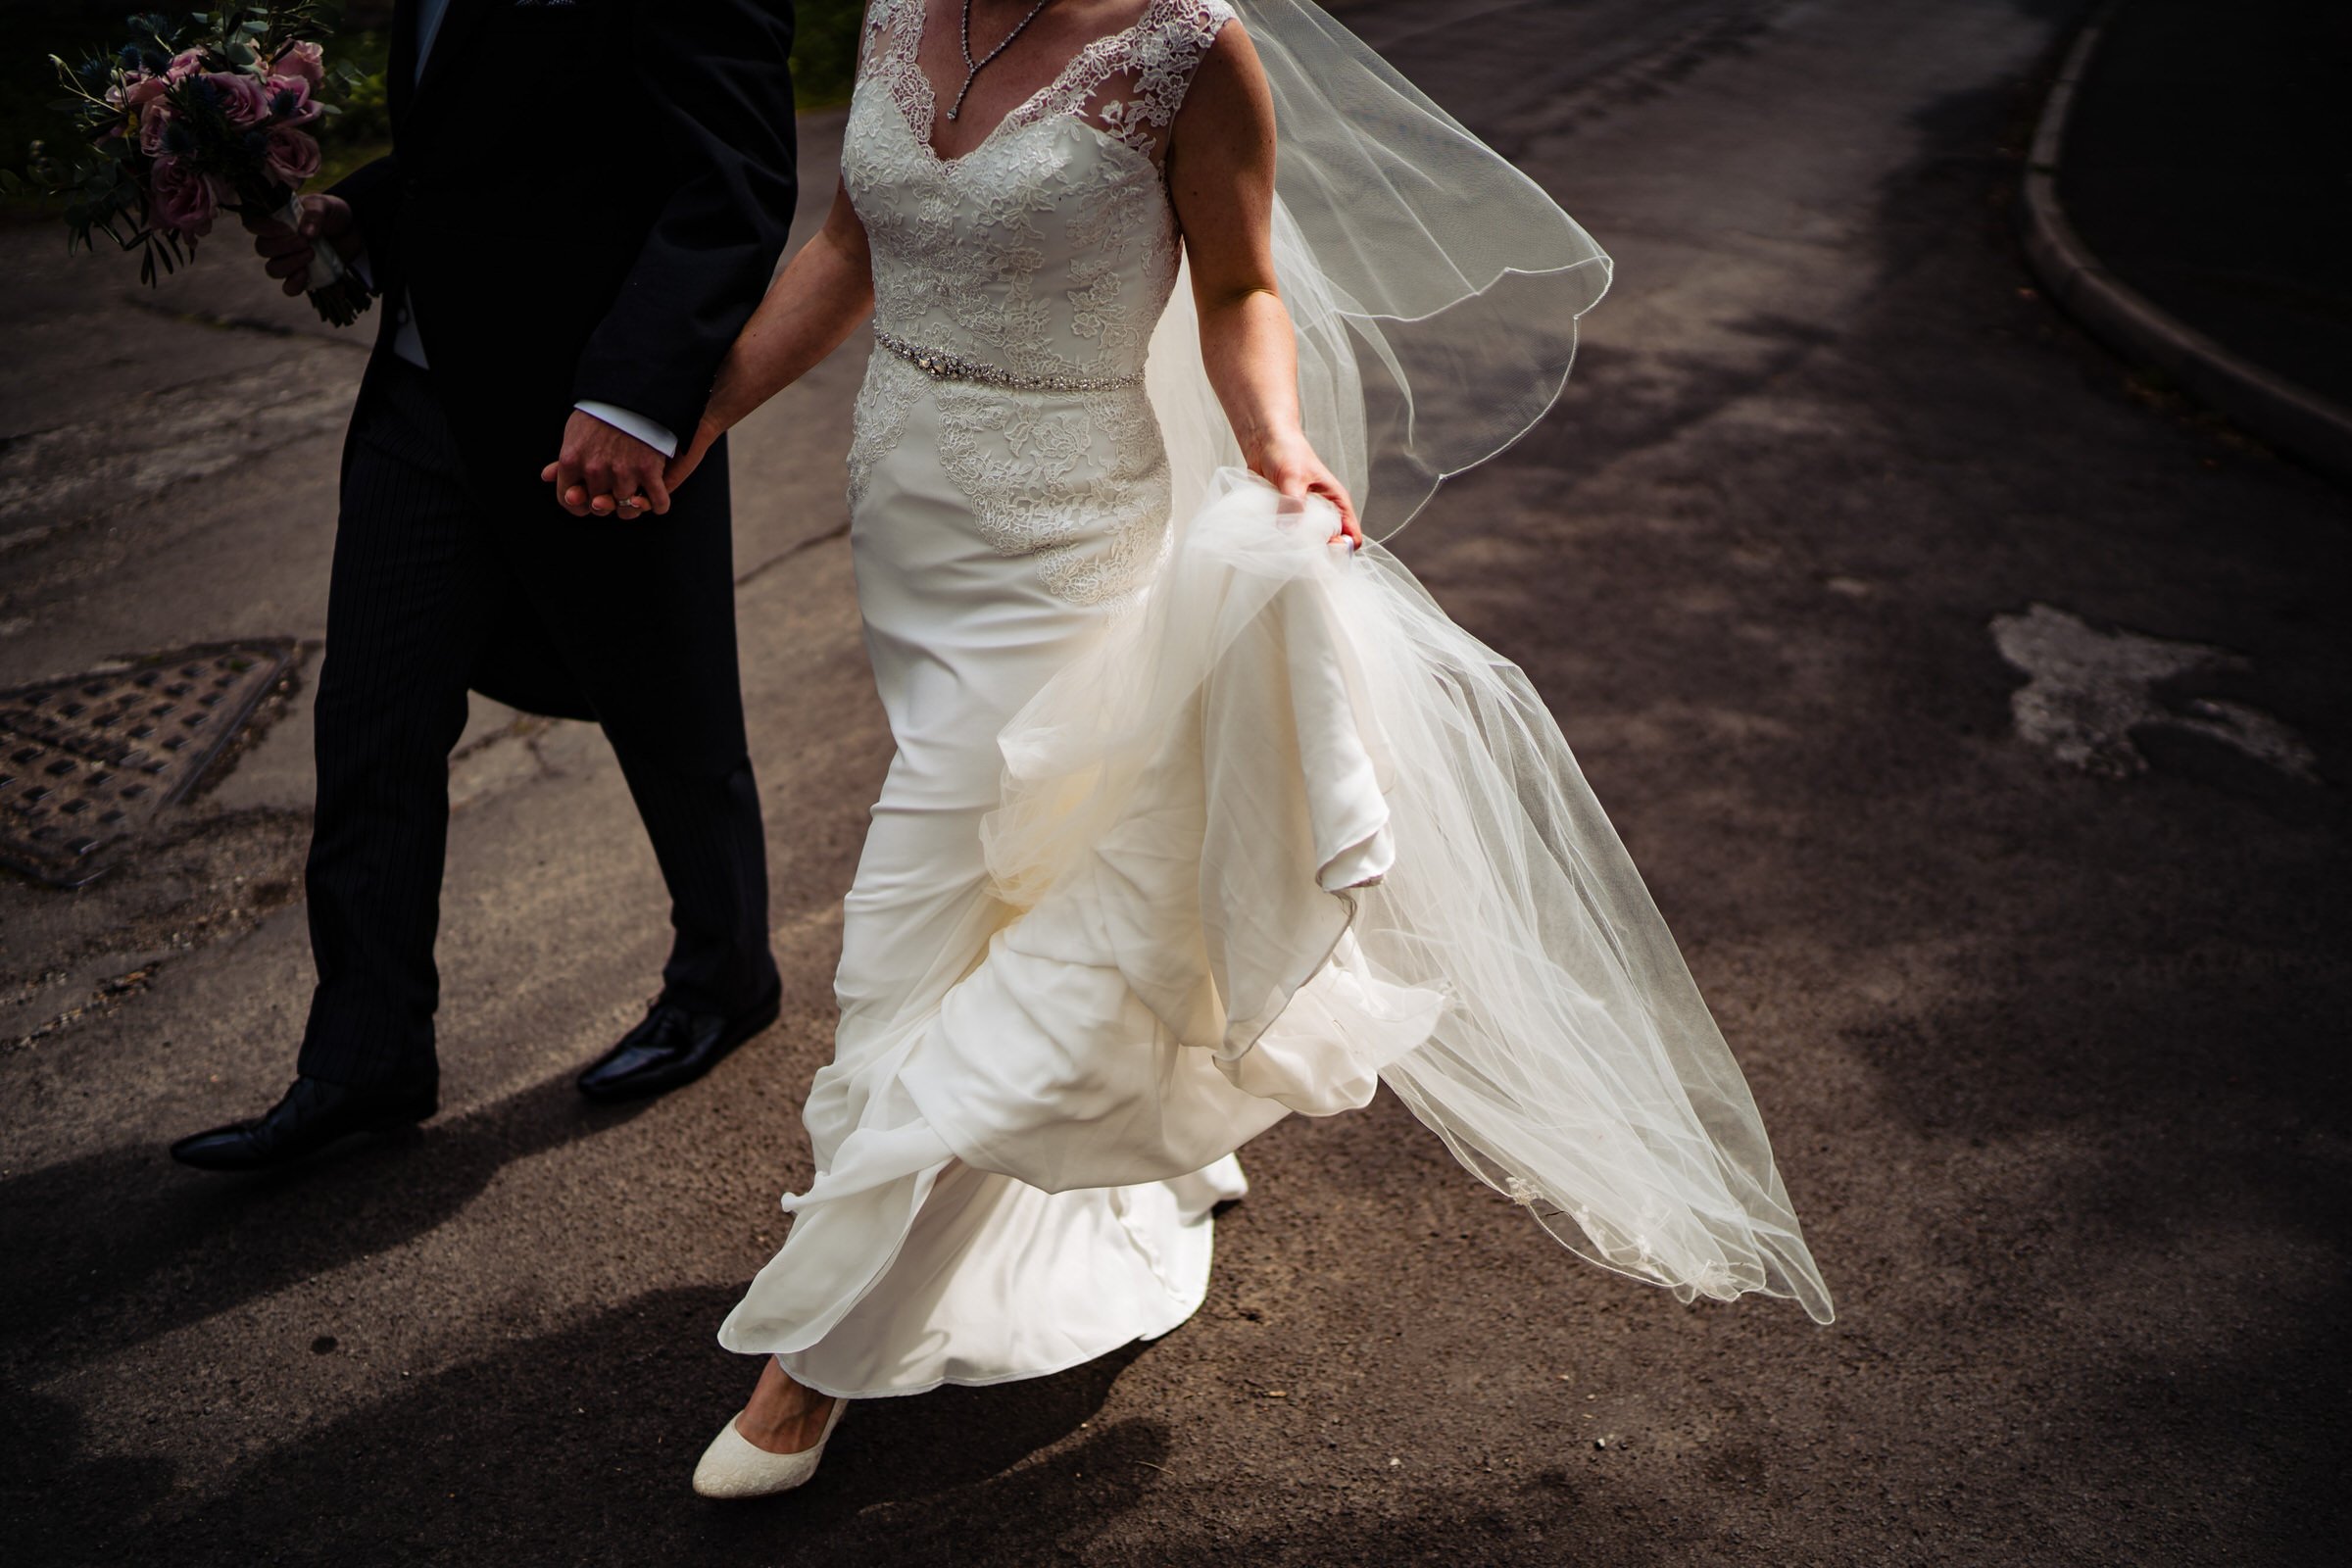 bride and groom - walking - windy - dress.jpg